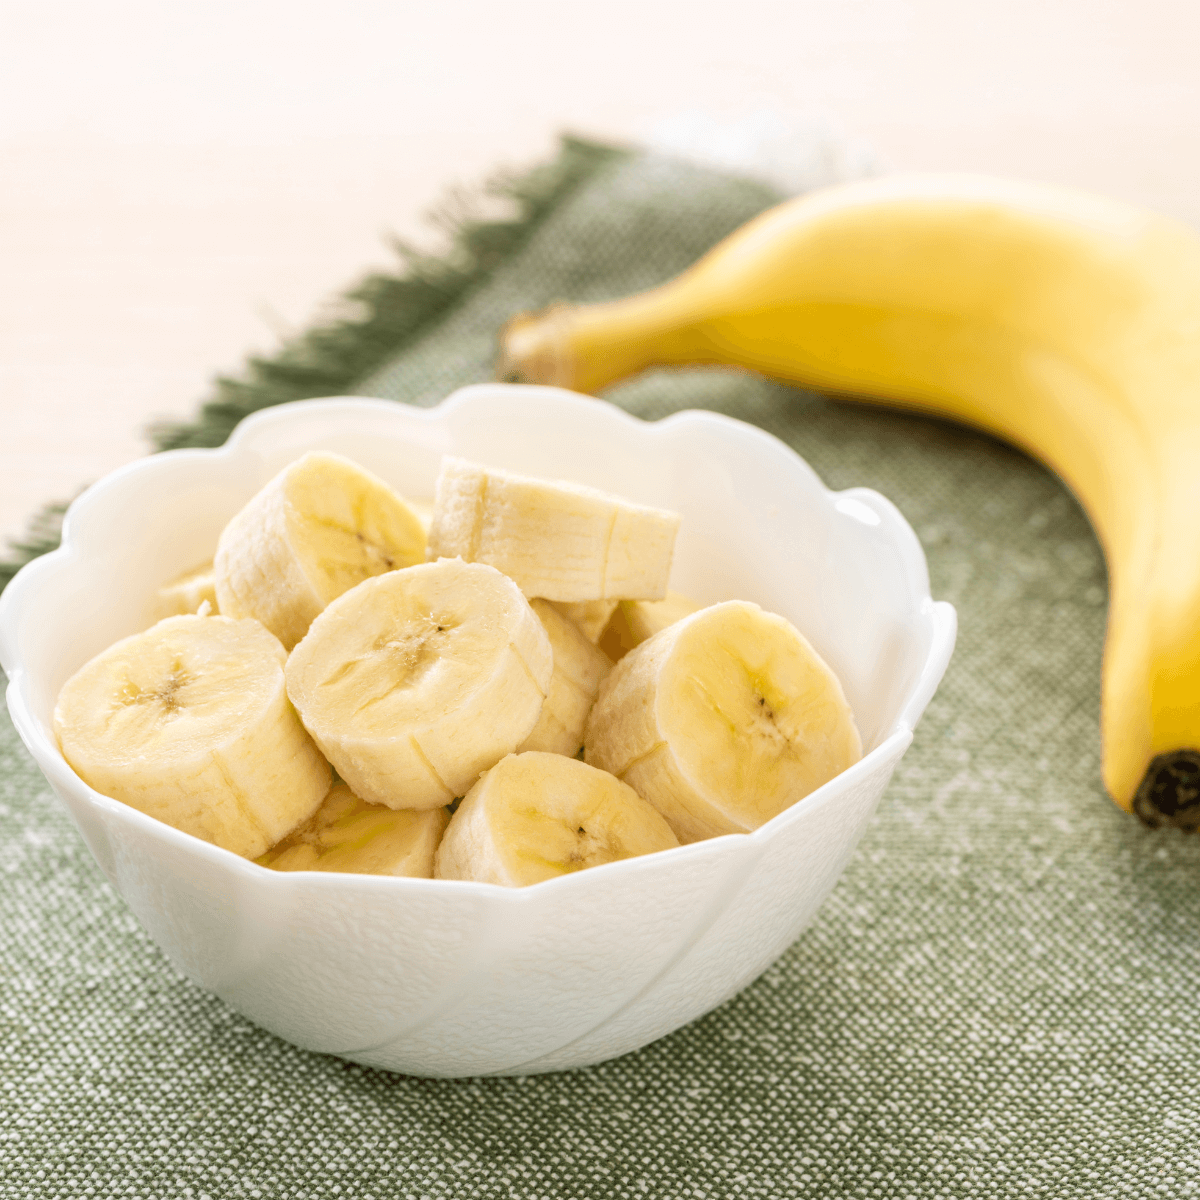 banana p&amp;G organic foods 